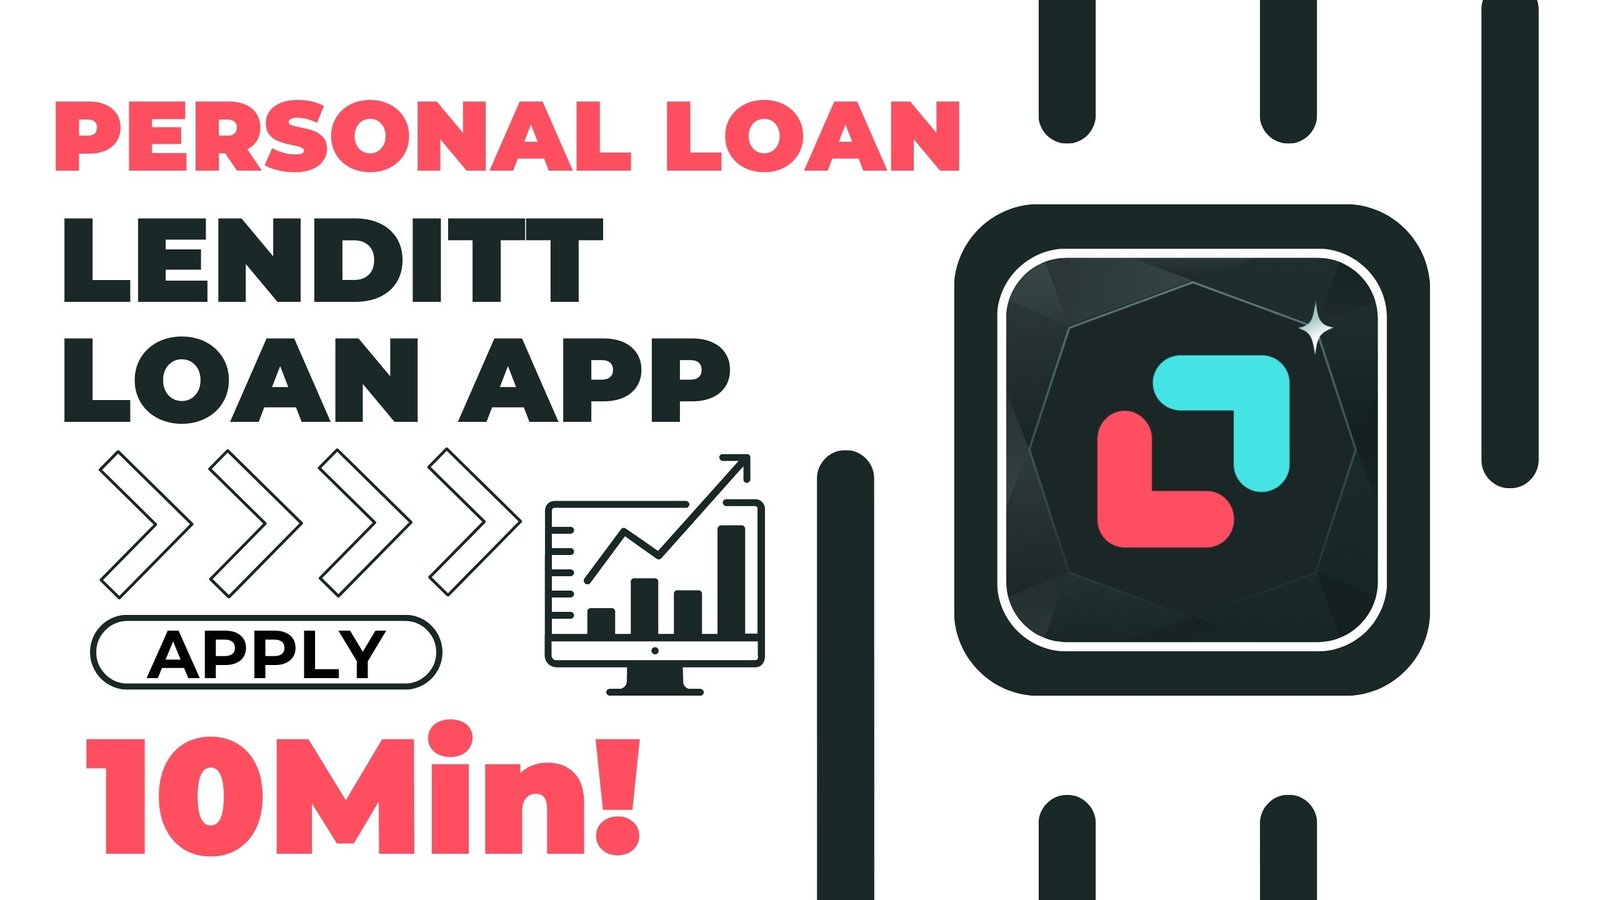 Lenditt Loan App से लोन कैसे लें?